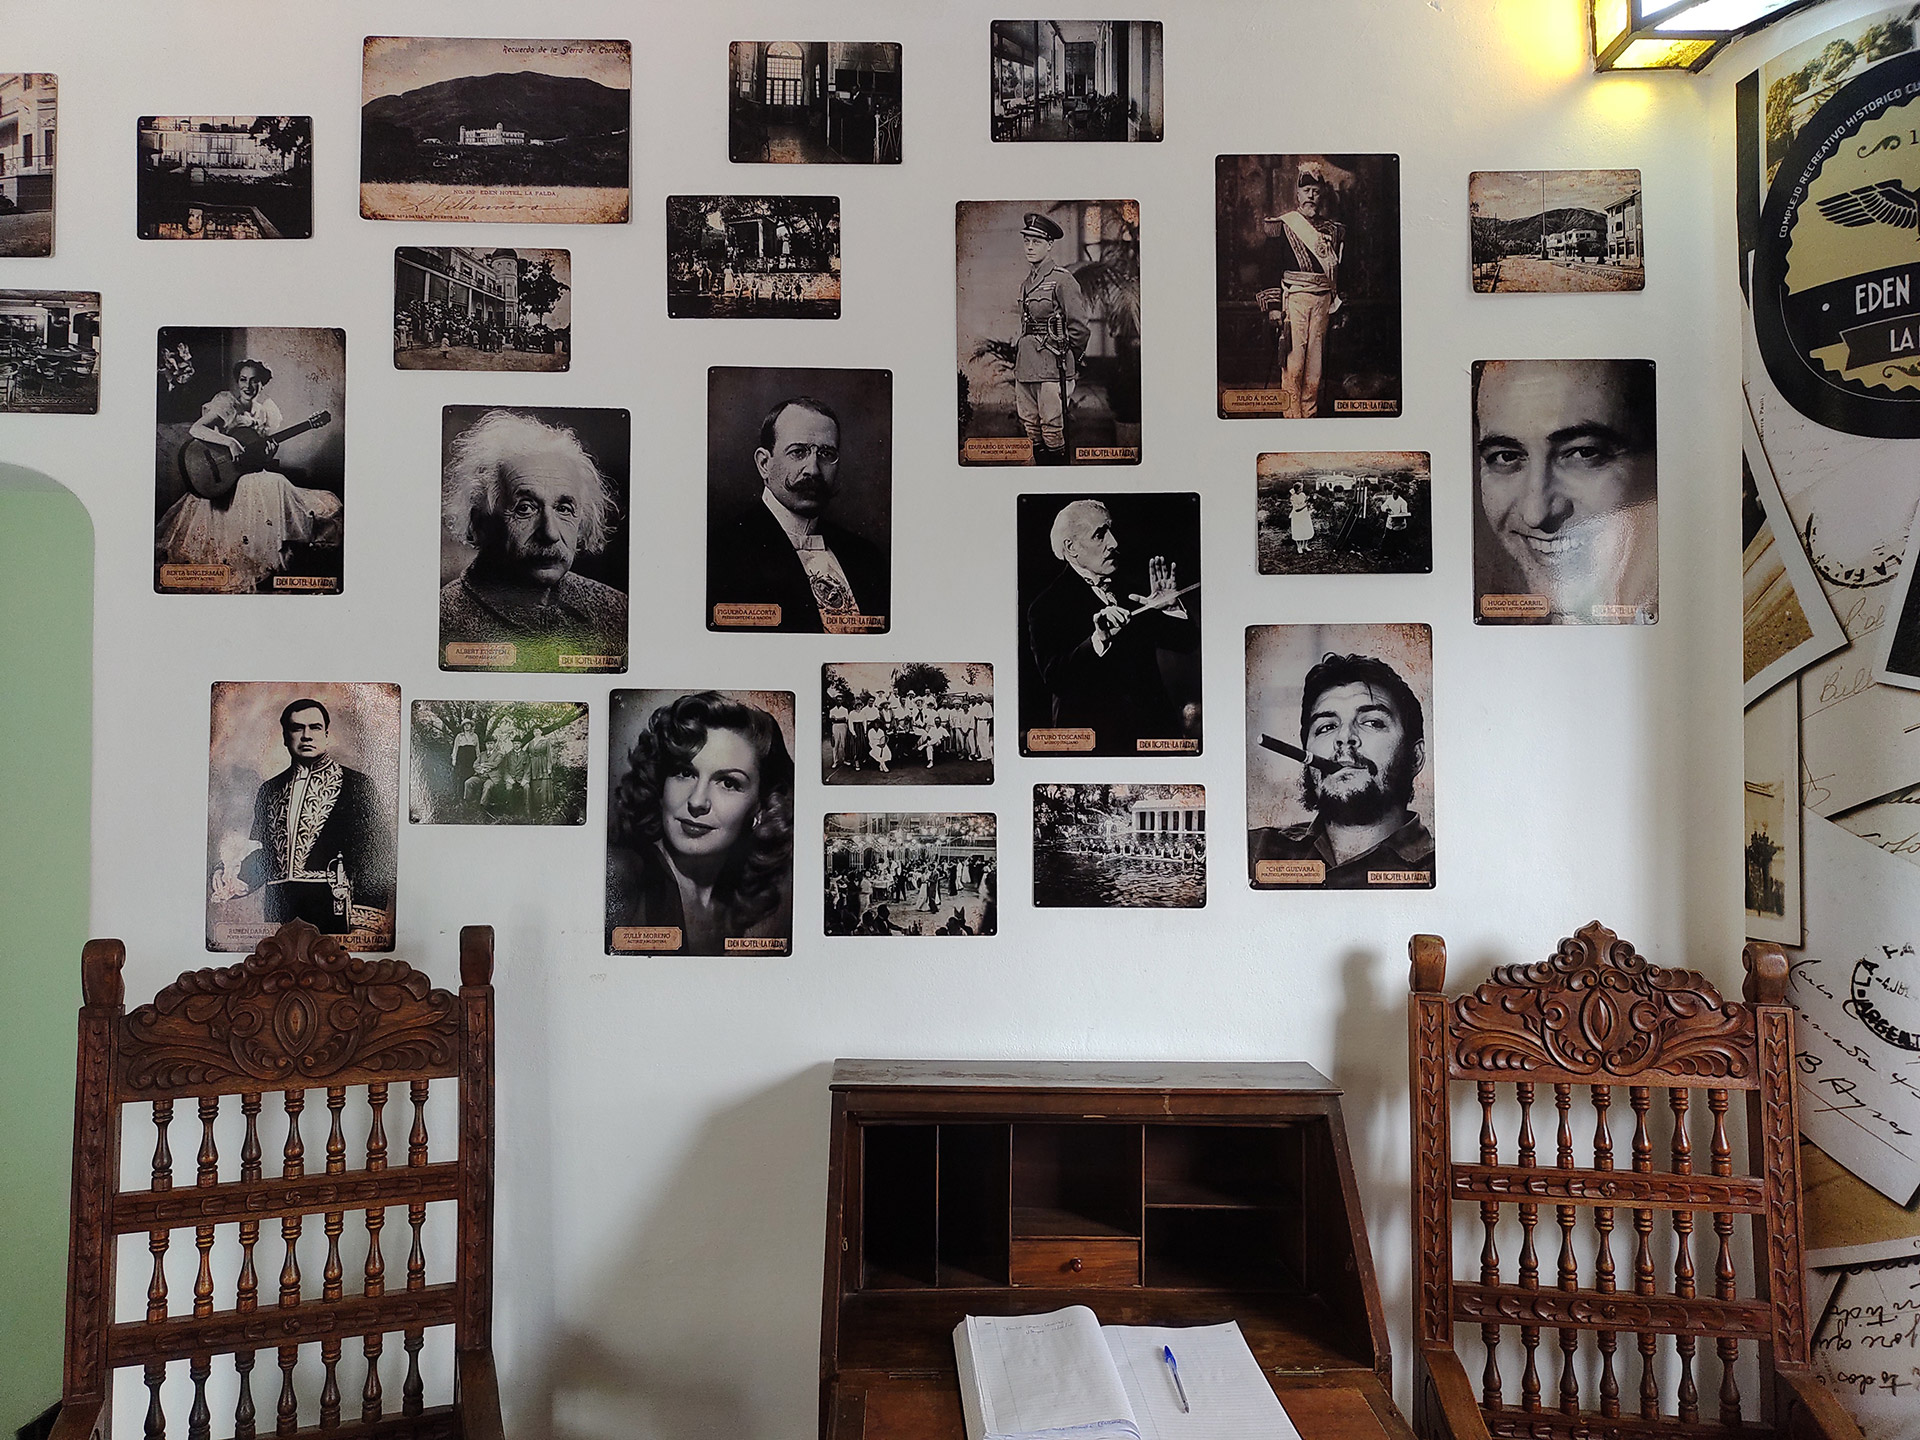 En sus paredes quedaron las huellas de visitante ilustres: visitas de presidentes como Julio Argentino Roca, científicos como Albert Einstein y anécdotas con el Che Guevara como protagonista